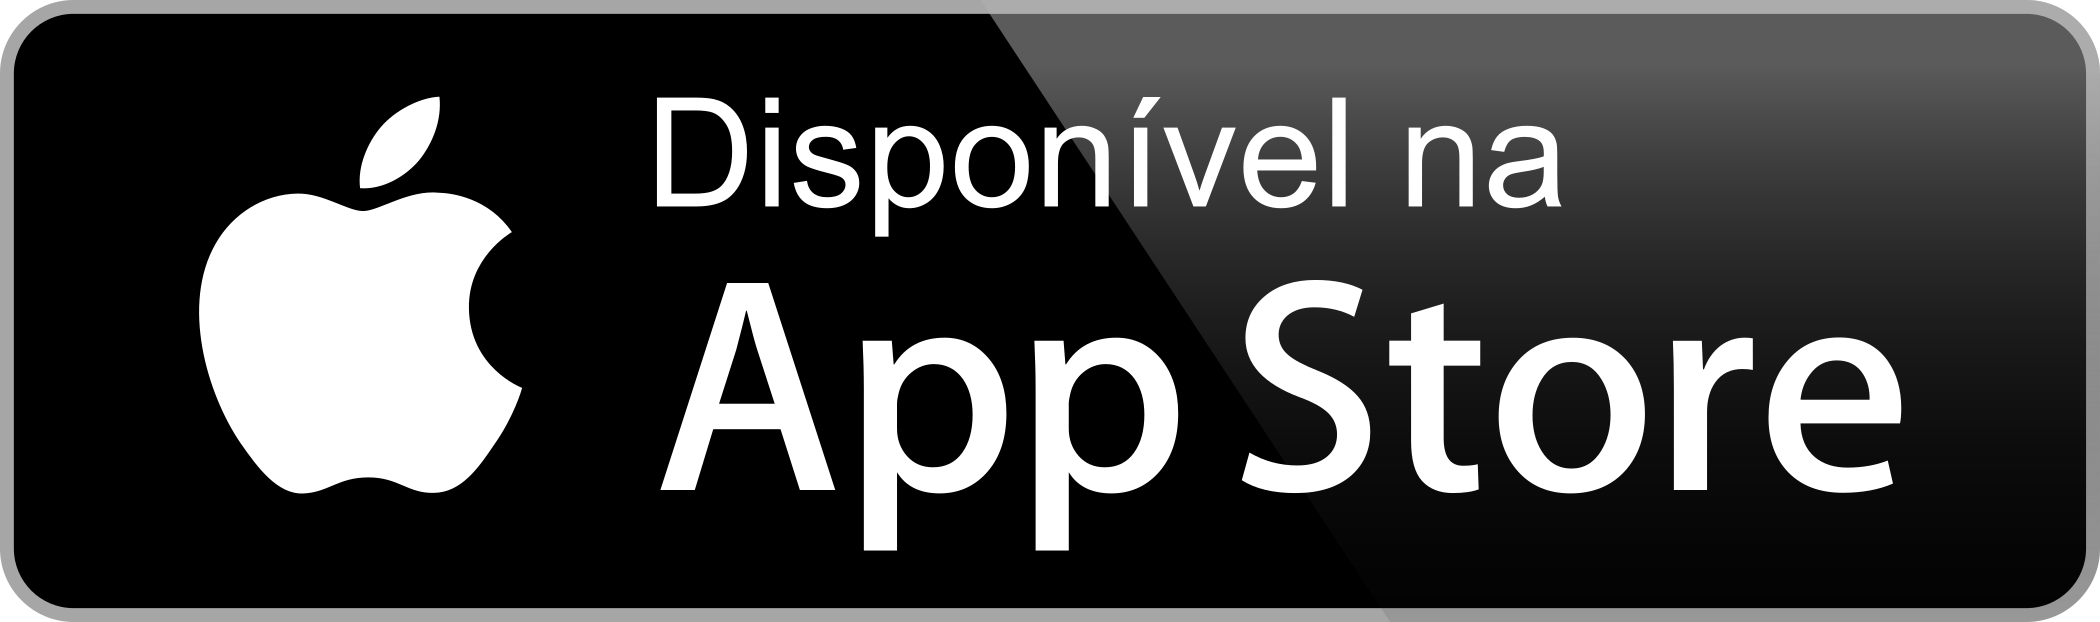 disponivel na app store botao 2 - Disponível na App Store - Botão Disponível na App Store